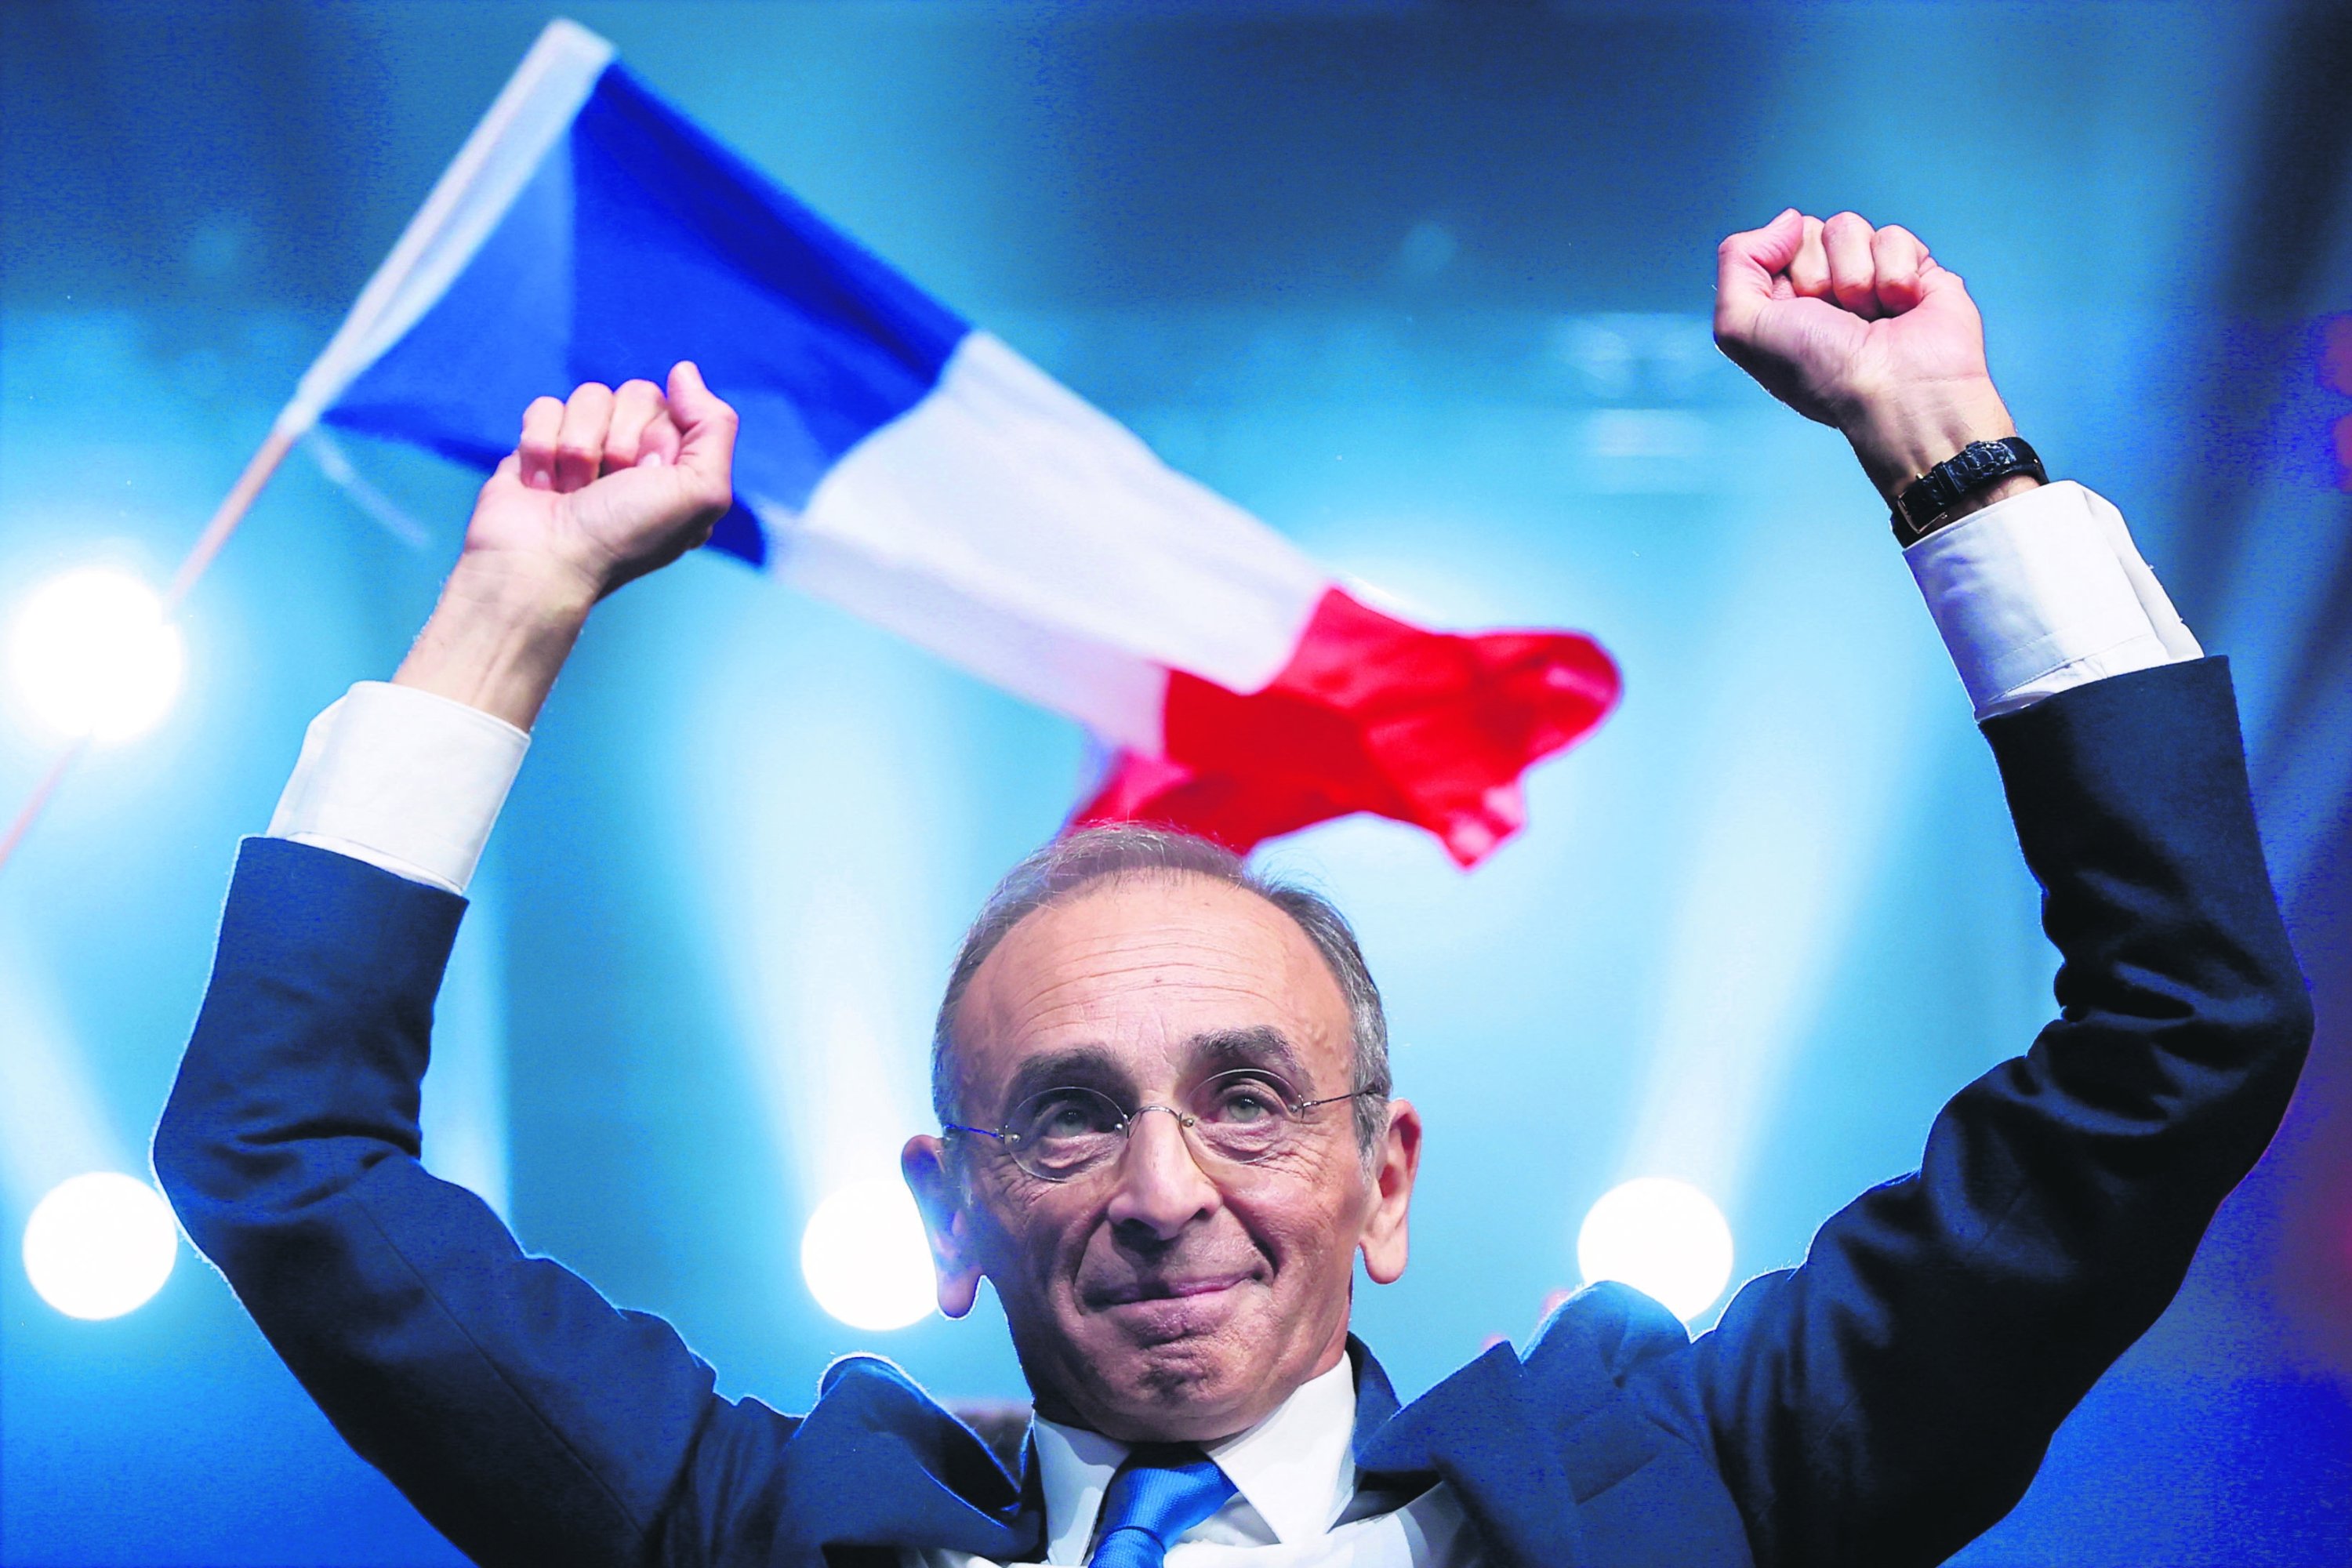 Komentator sayap kanan Prancis Eric Zemmour, seorang kandidat dalam pemilihan presiden Prancis 2022, menghadiri rapat umum kampanye politik di Villepinte dekat Paris, Prancis, 5 Desember 2021. (Foto Reuters)